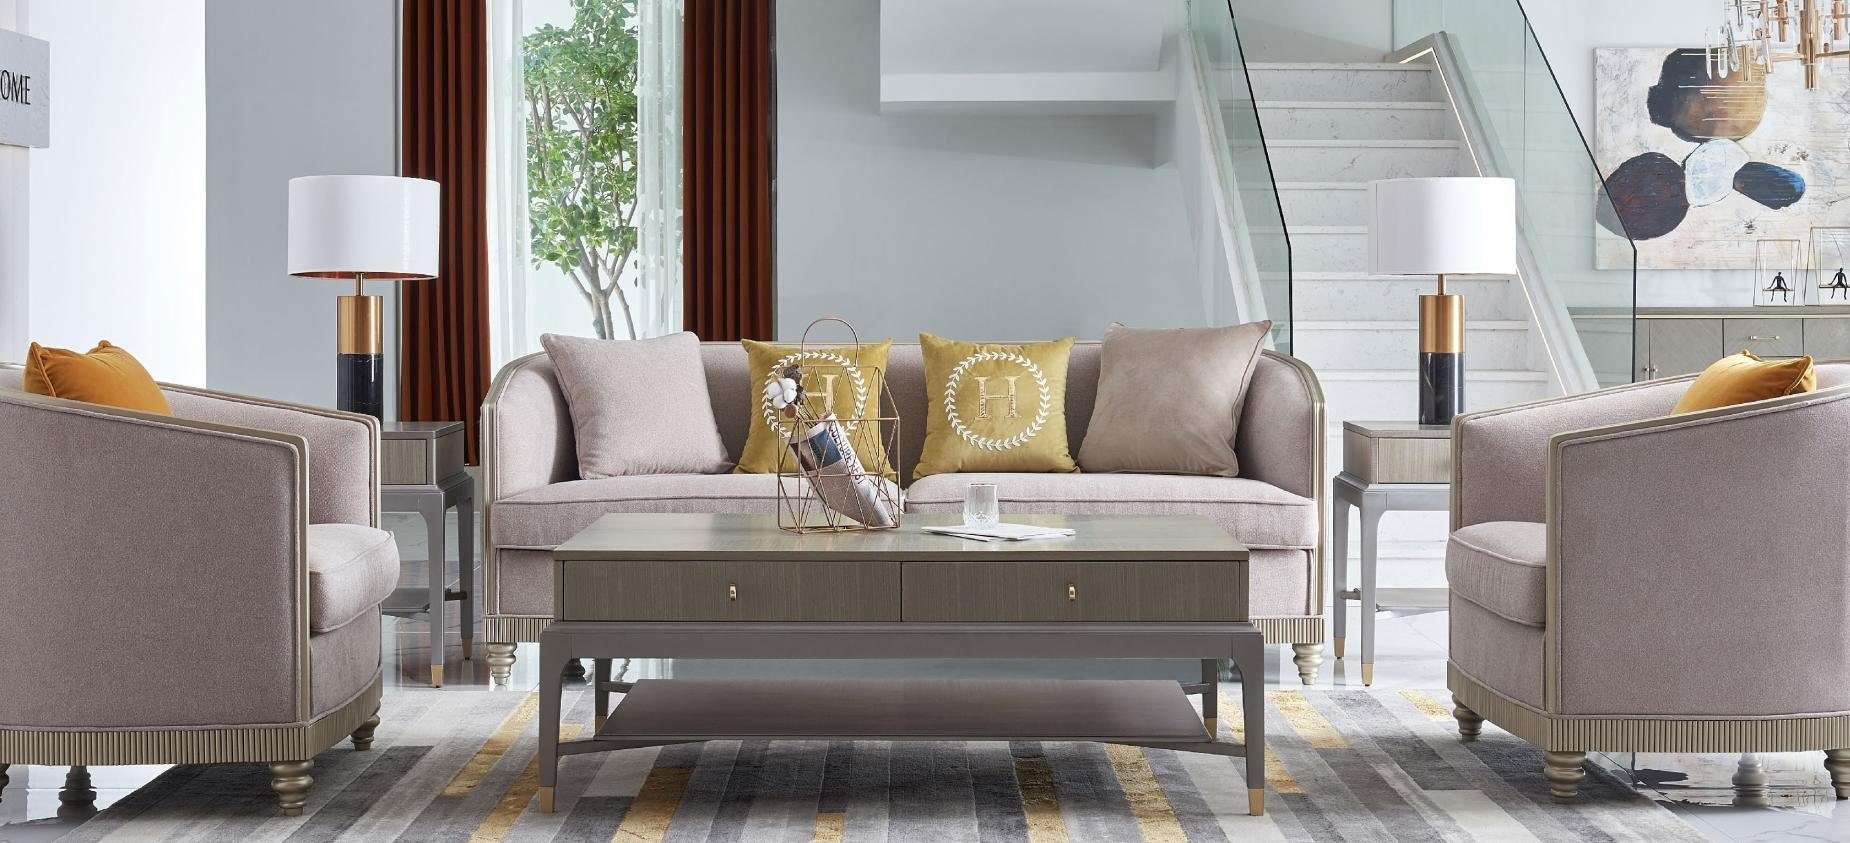 JVmoebel Sofa Designer Couch Sitzer Europe 3+1+1 Polster BeigeTextil Garnitur, Sitz in Made